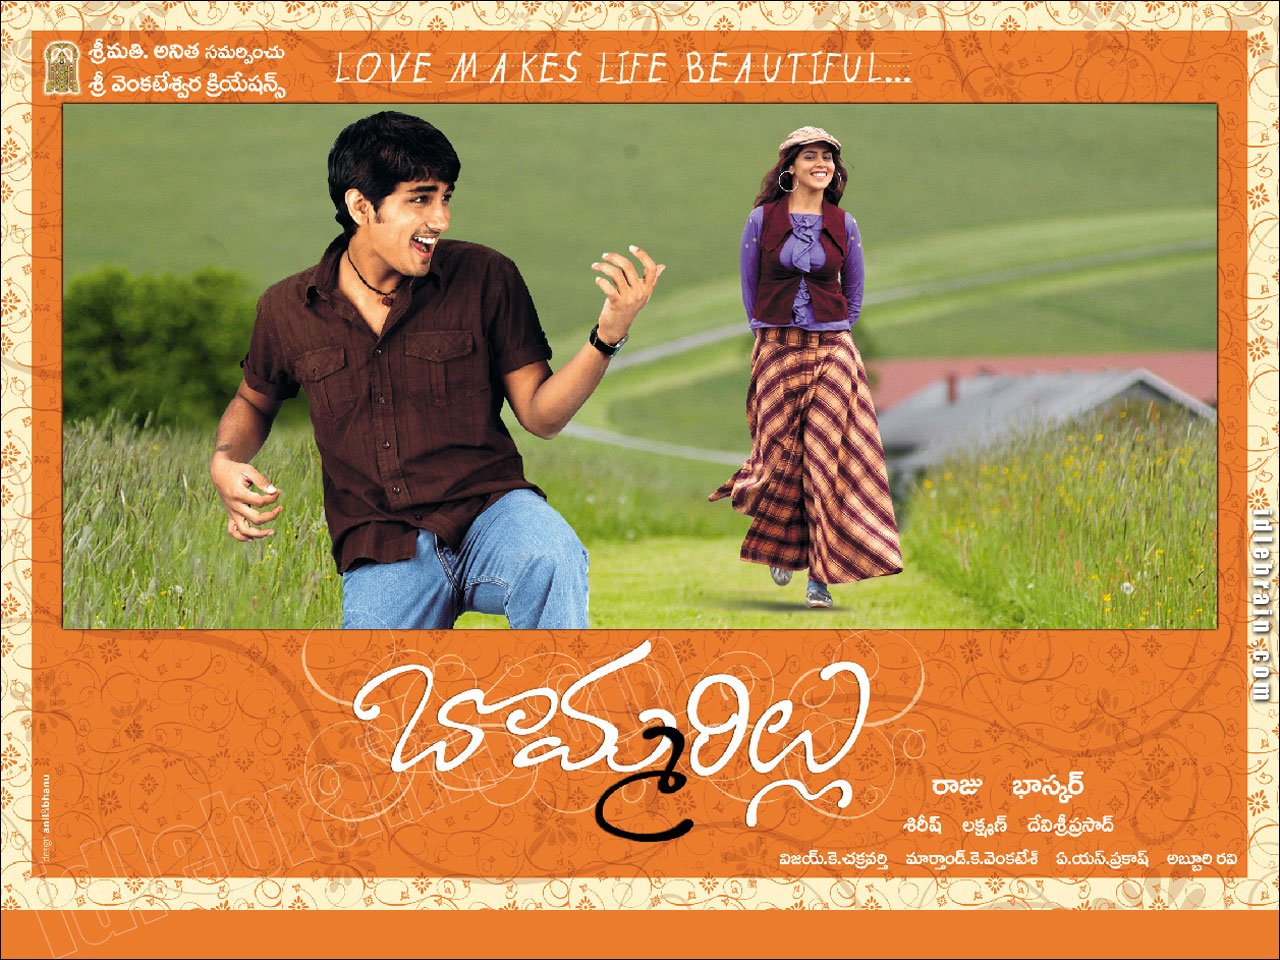 Bommarillu - Telugu film wallpapers - Telugu cinema ...